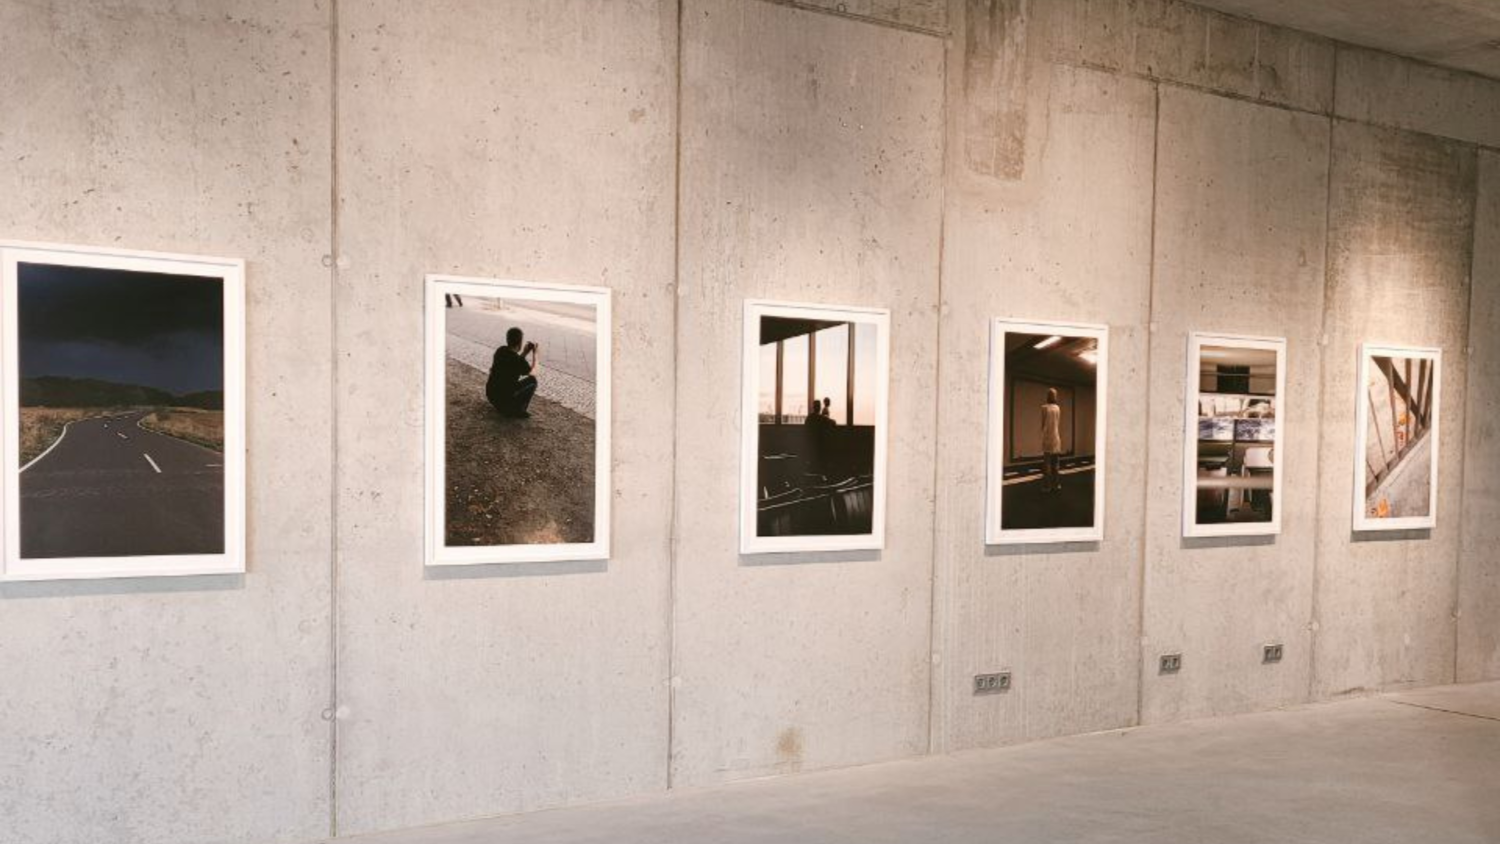 Ausstellungsansicht bei ARTCO Berlin und den Fotografien von Lukas Korschan, Hängung an einer Betonwand